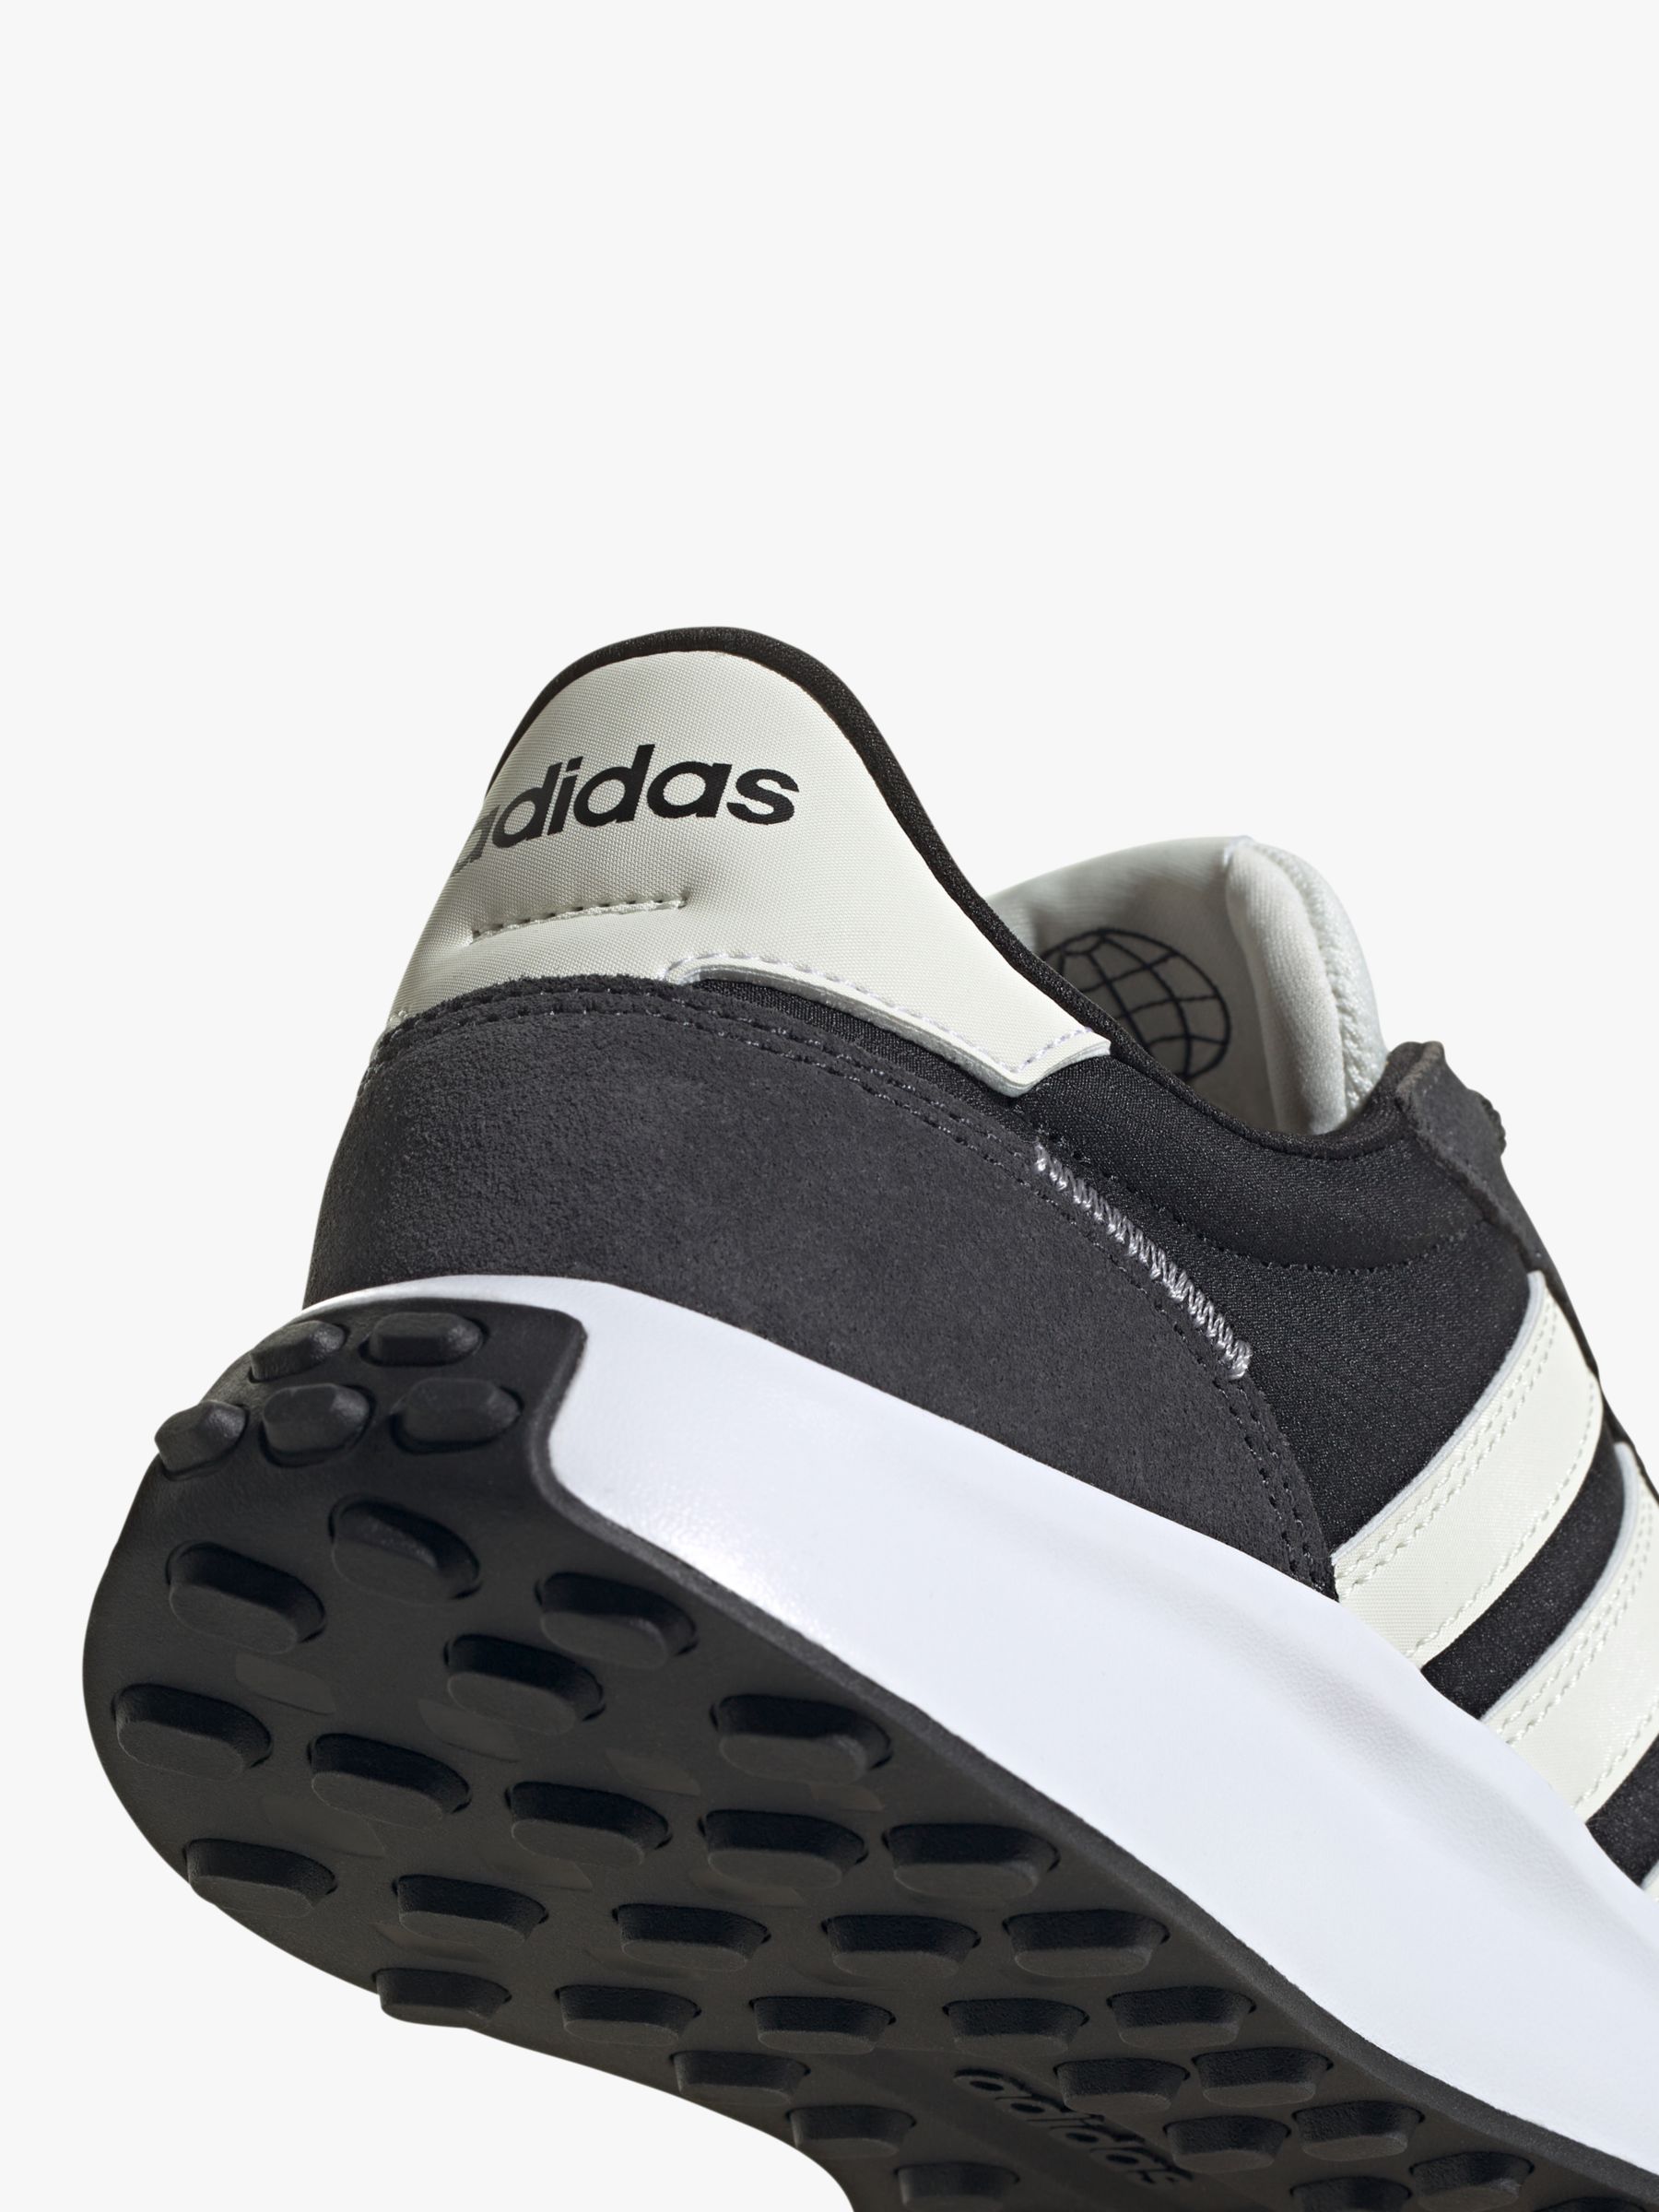 adidas Run 70s Trainers, Black/white, 6.5